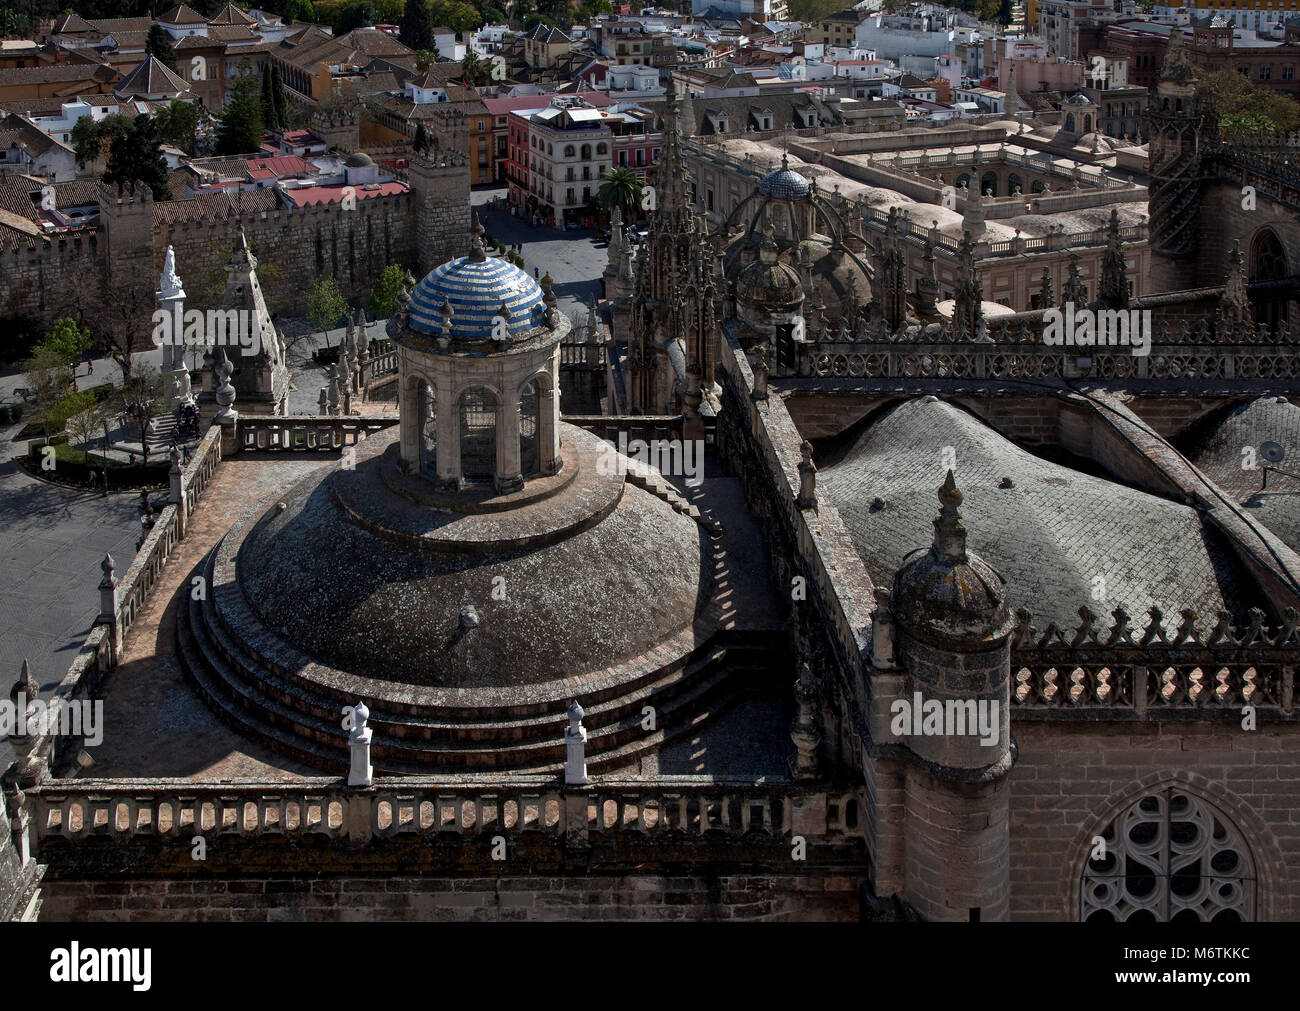 Sevilla, Kathedrale. Kuppeldach mit Laterne über der Königlichen Kapelle Sevilla Stock Photo